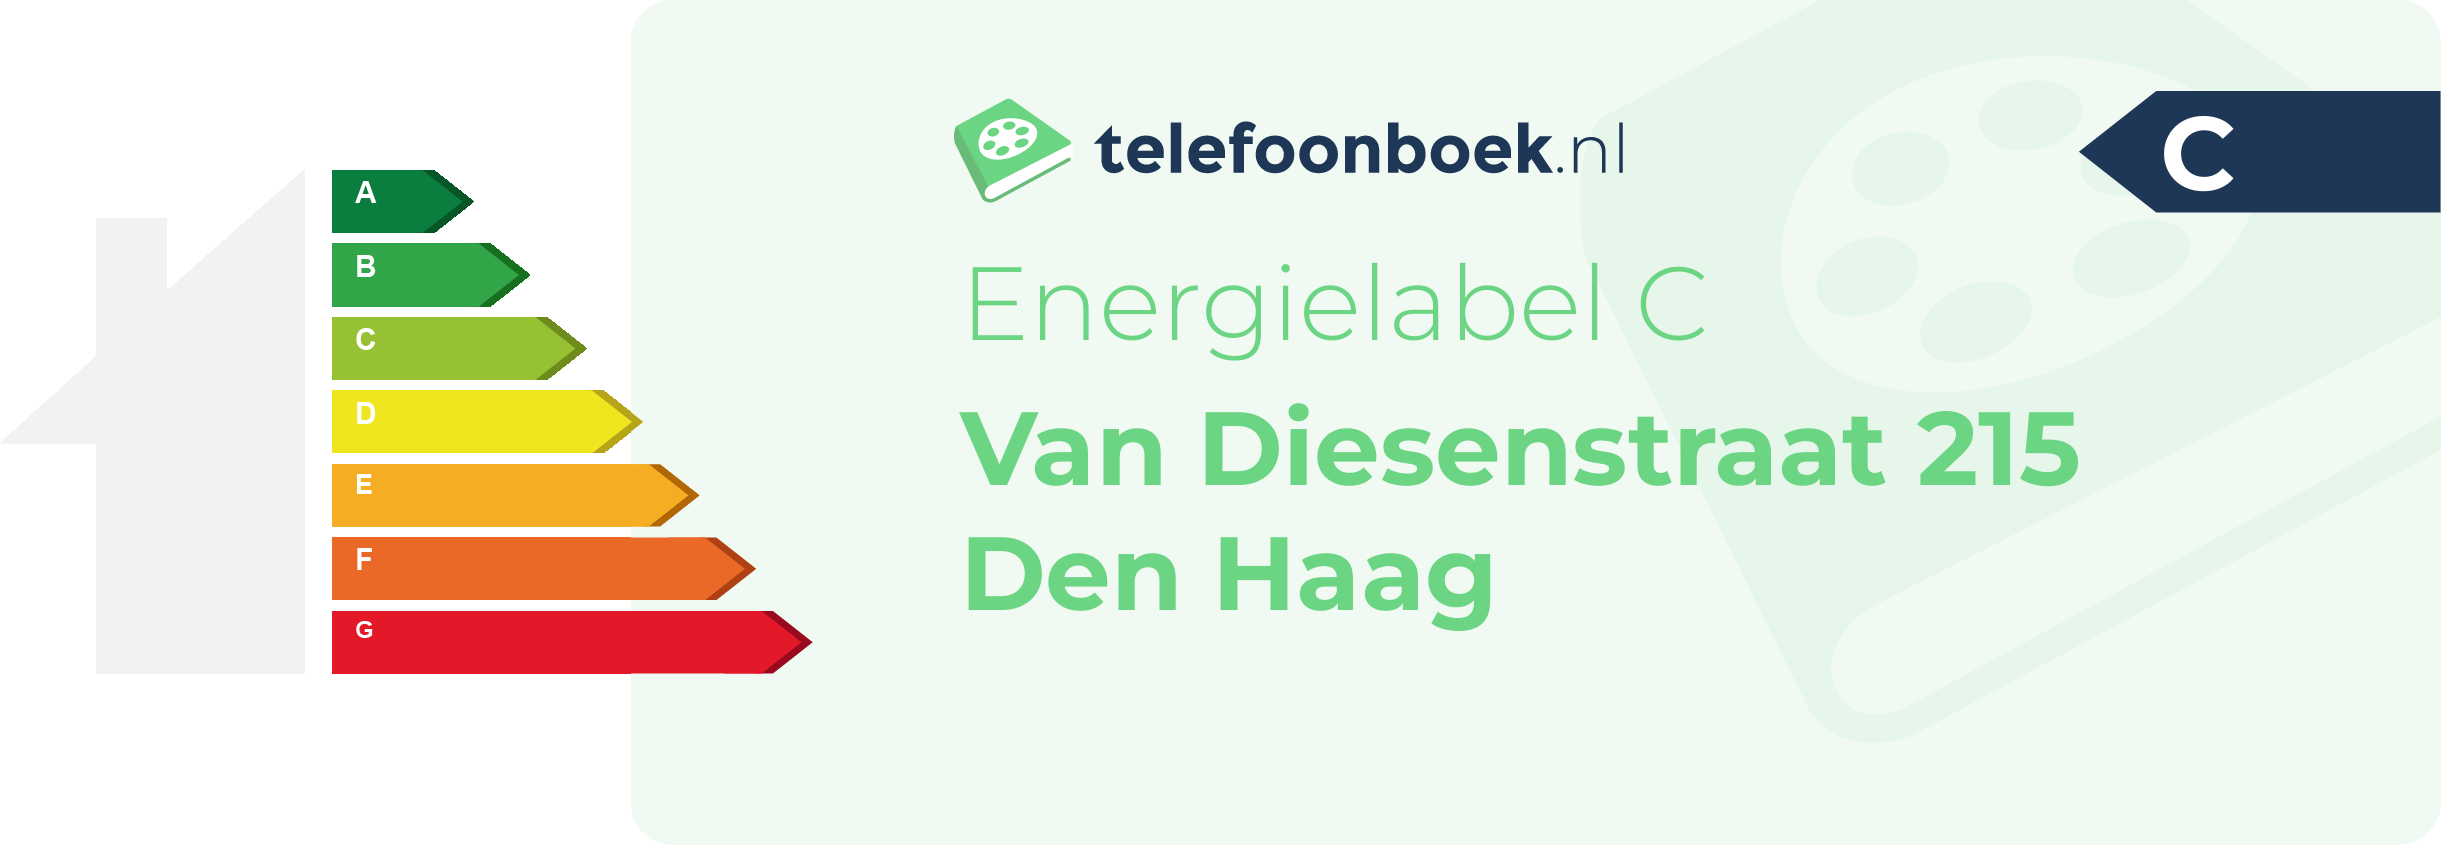 Energielabel Van Diesenstraat 215 Den Haag